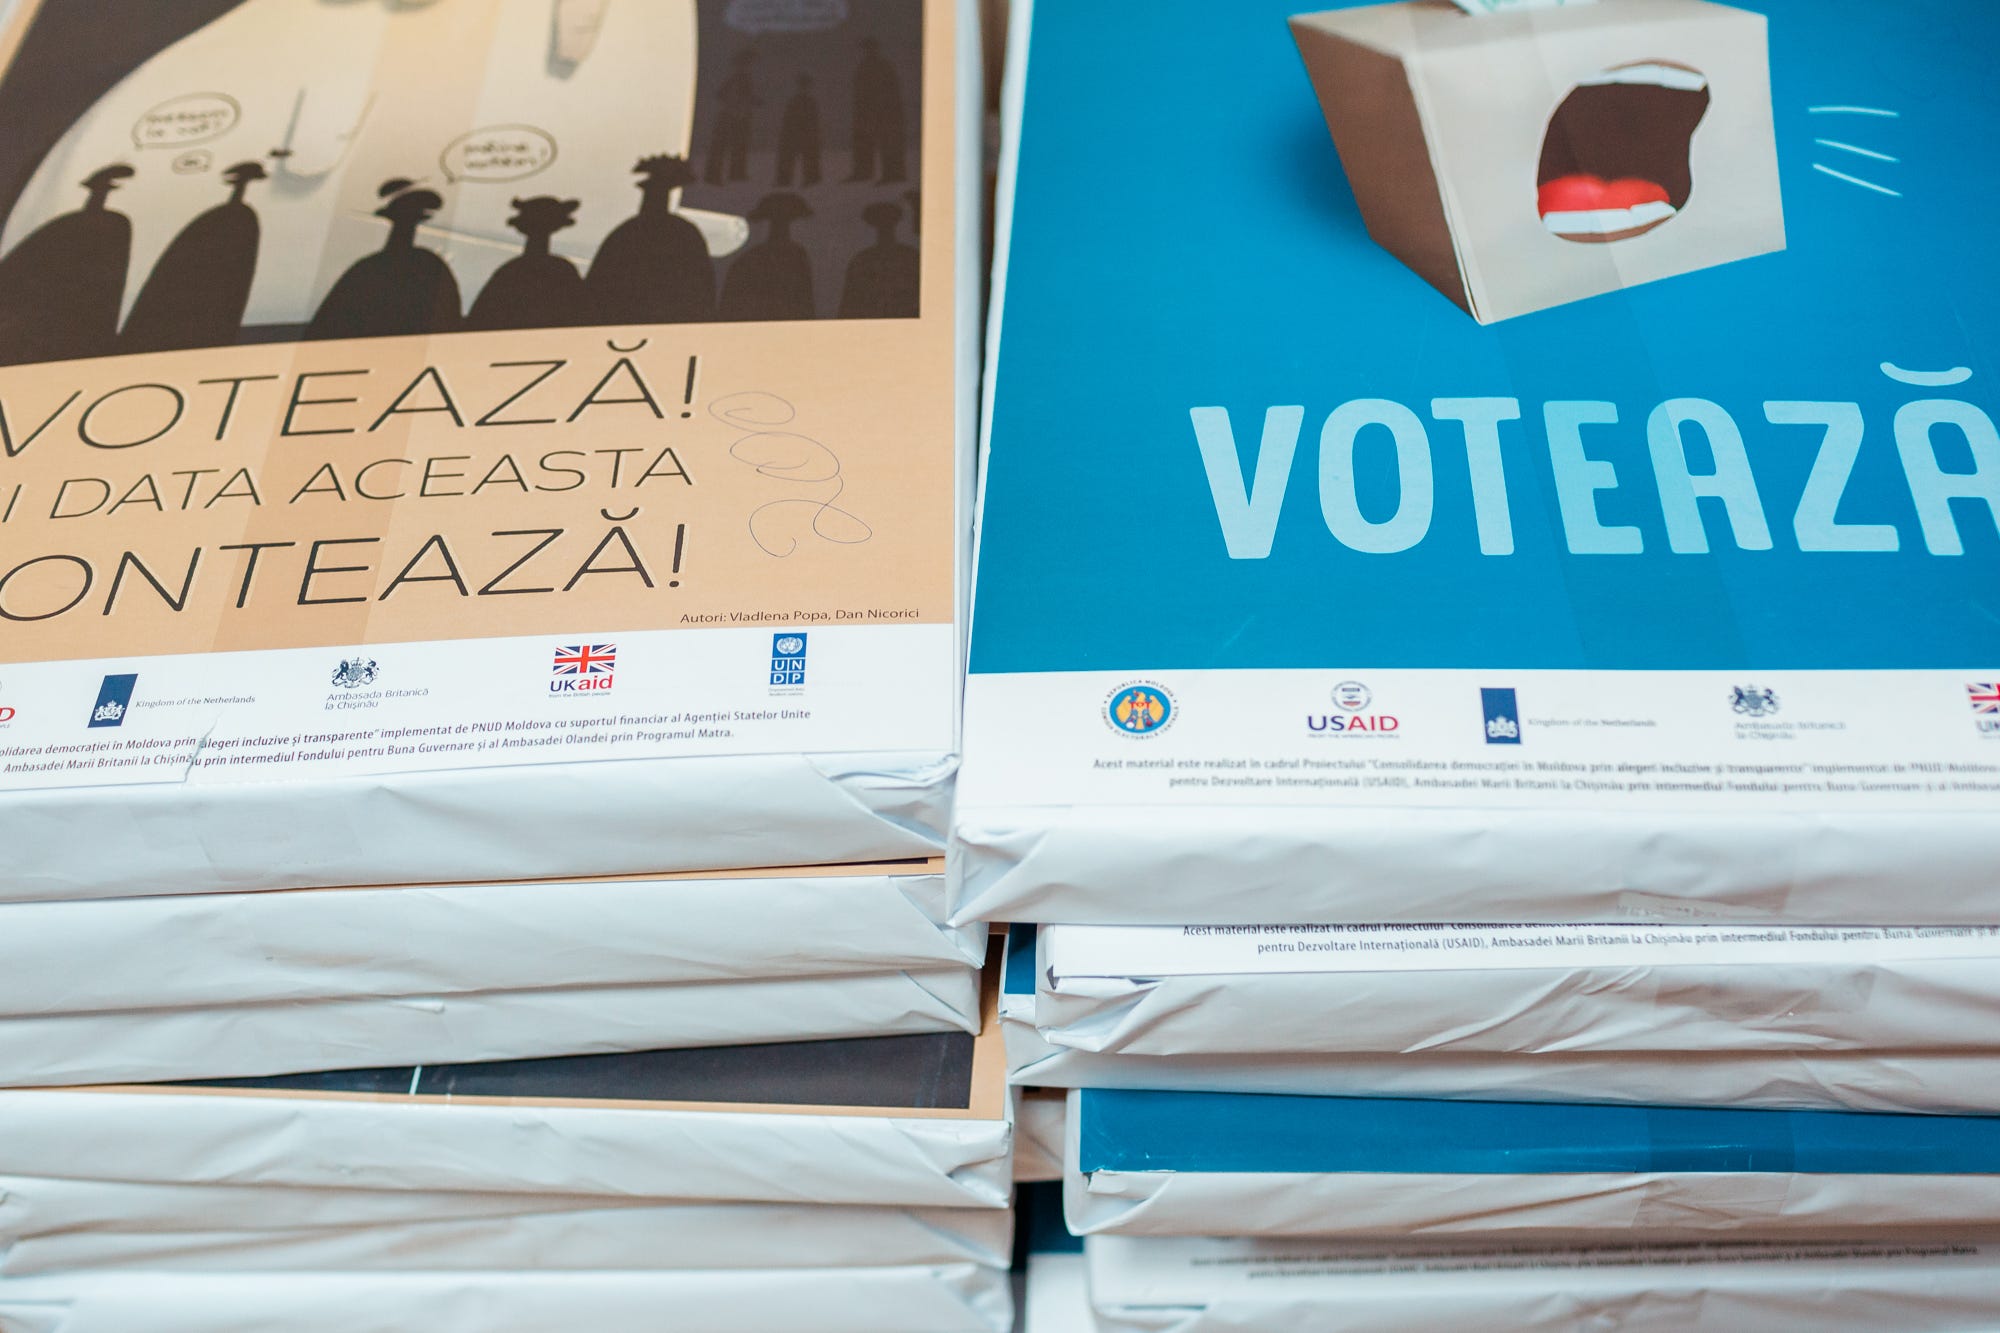 Puterea unui poster. Cum arta grafică poate motiva oamenii să iasă la vot |  by UNDP in Moldova | UNDP Moldova | Medium